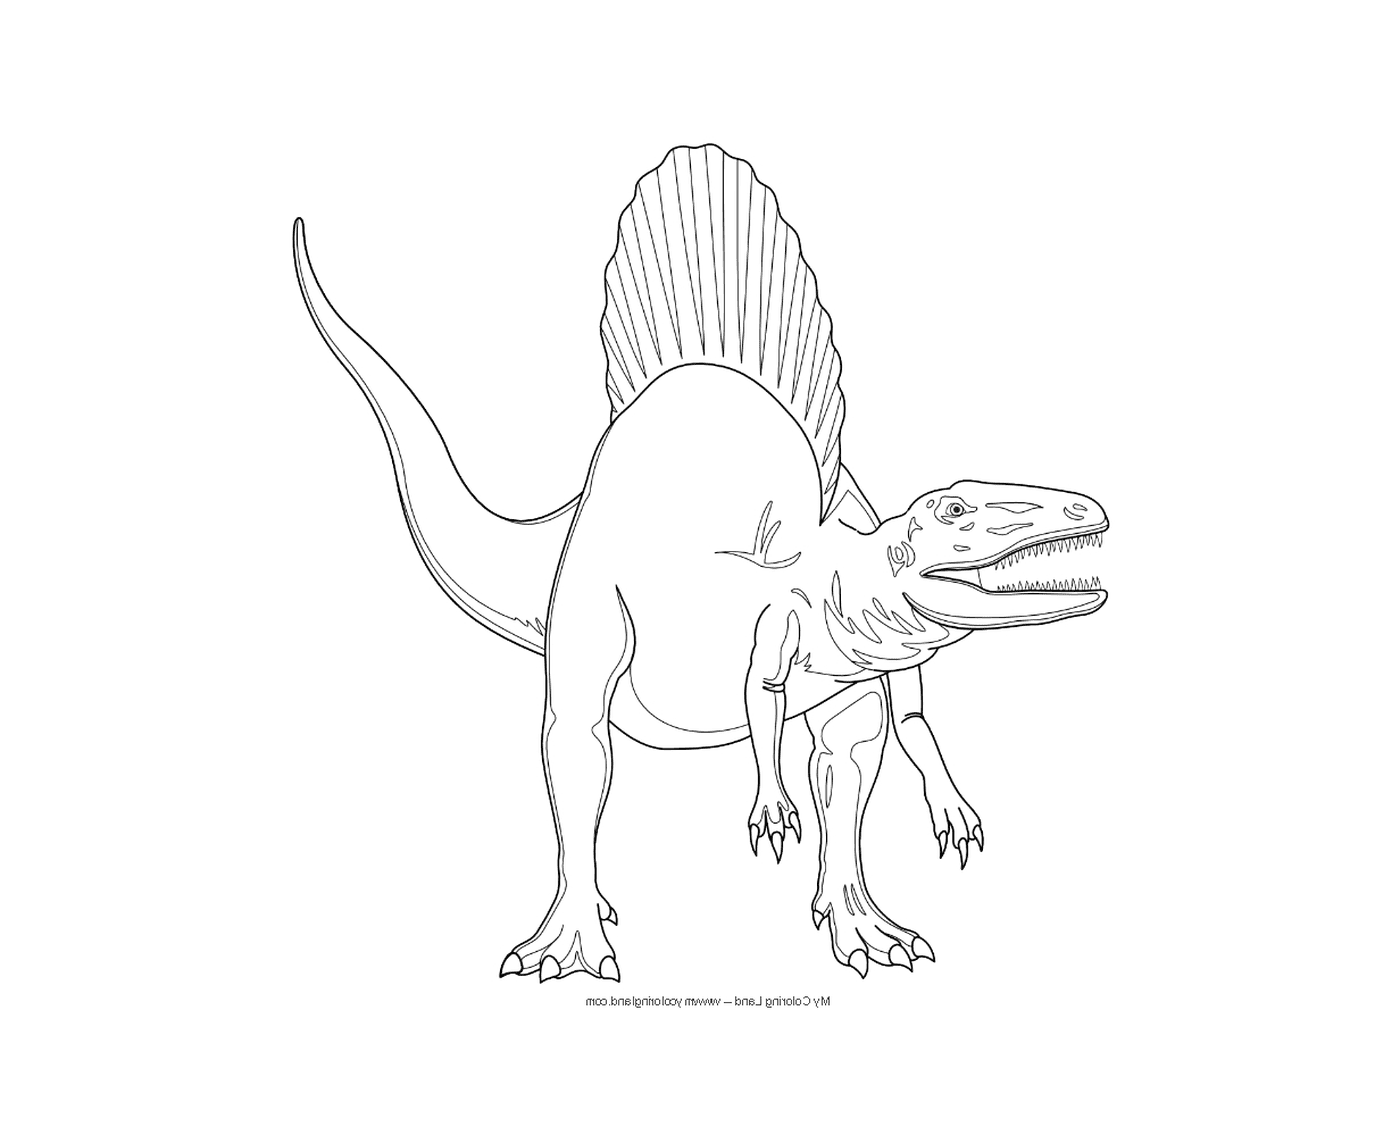  侏罗纪公园恐龙 令人印象深刻的脊柱龙 